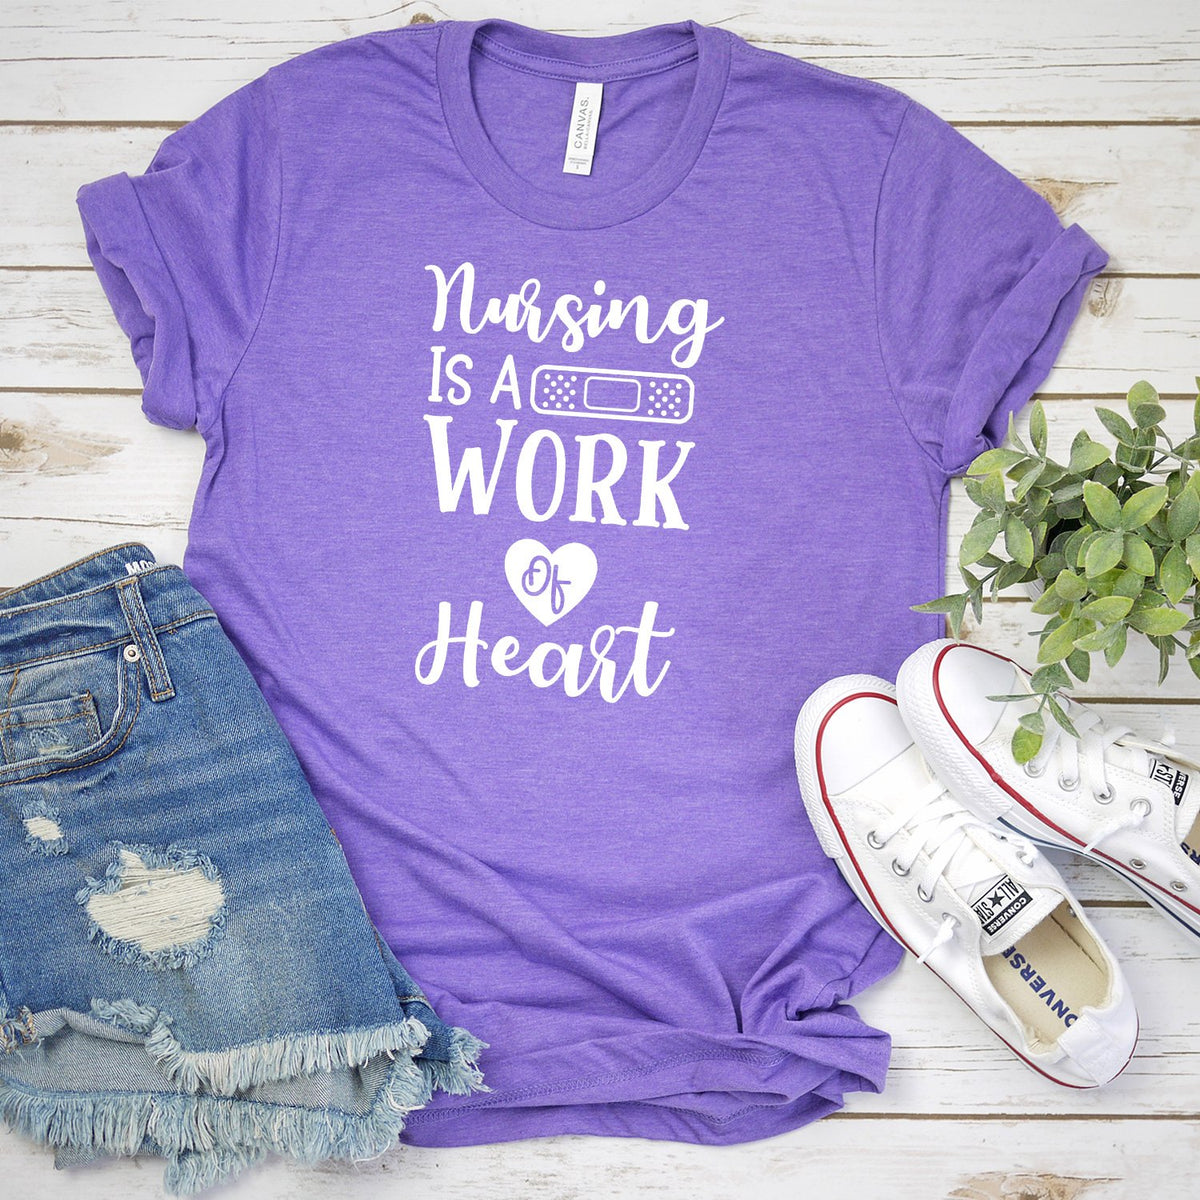 Nursing is A Work of Heart - Short Sleeve Tee Shirt